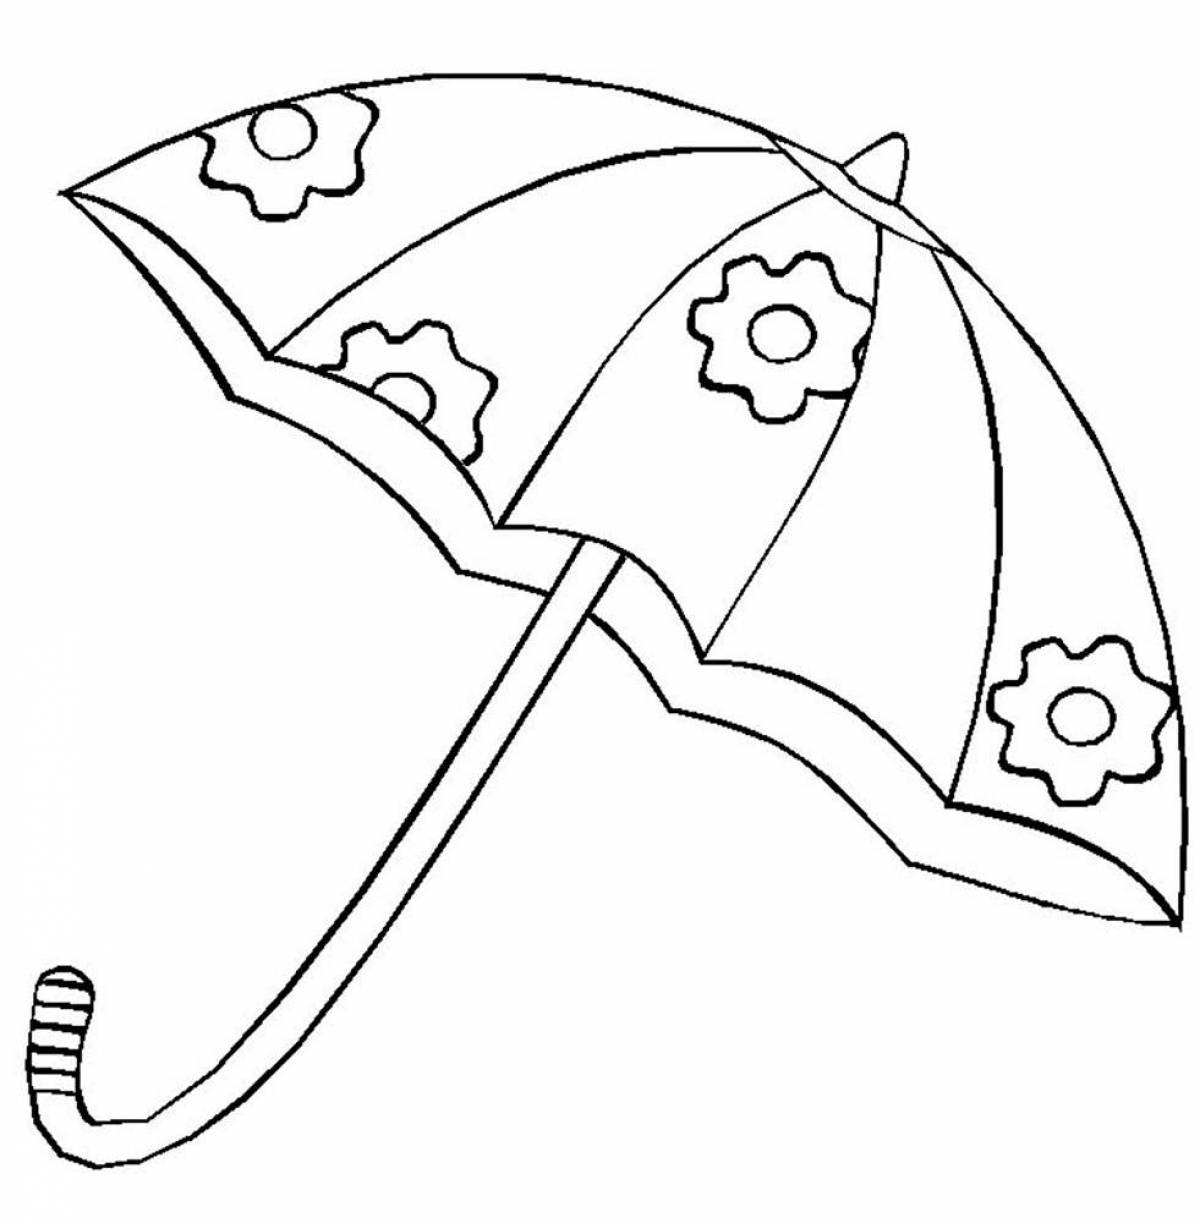 Раскраска сверкающий зонтик в горошек